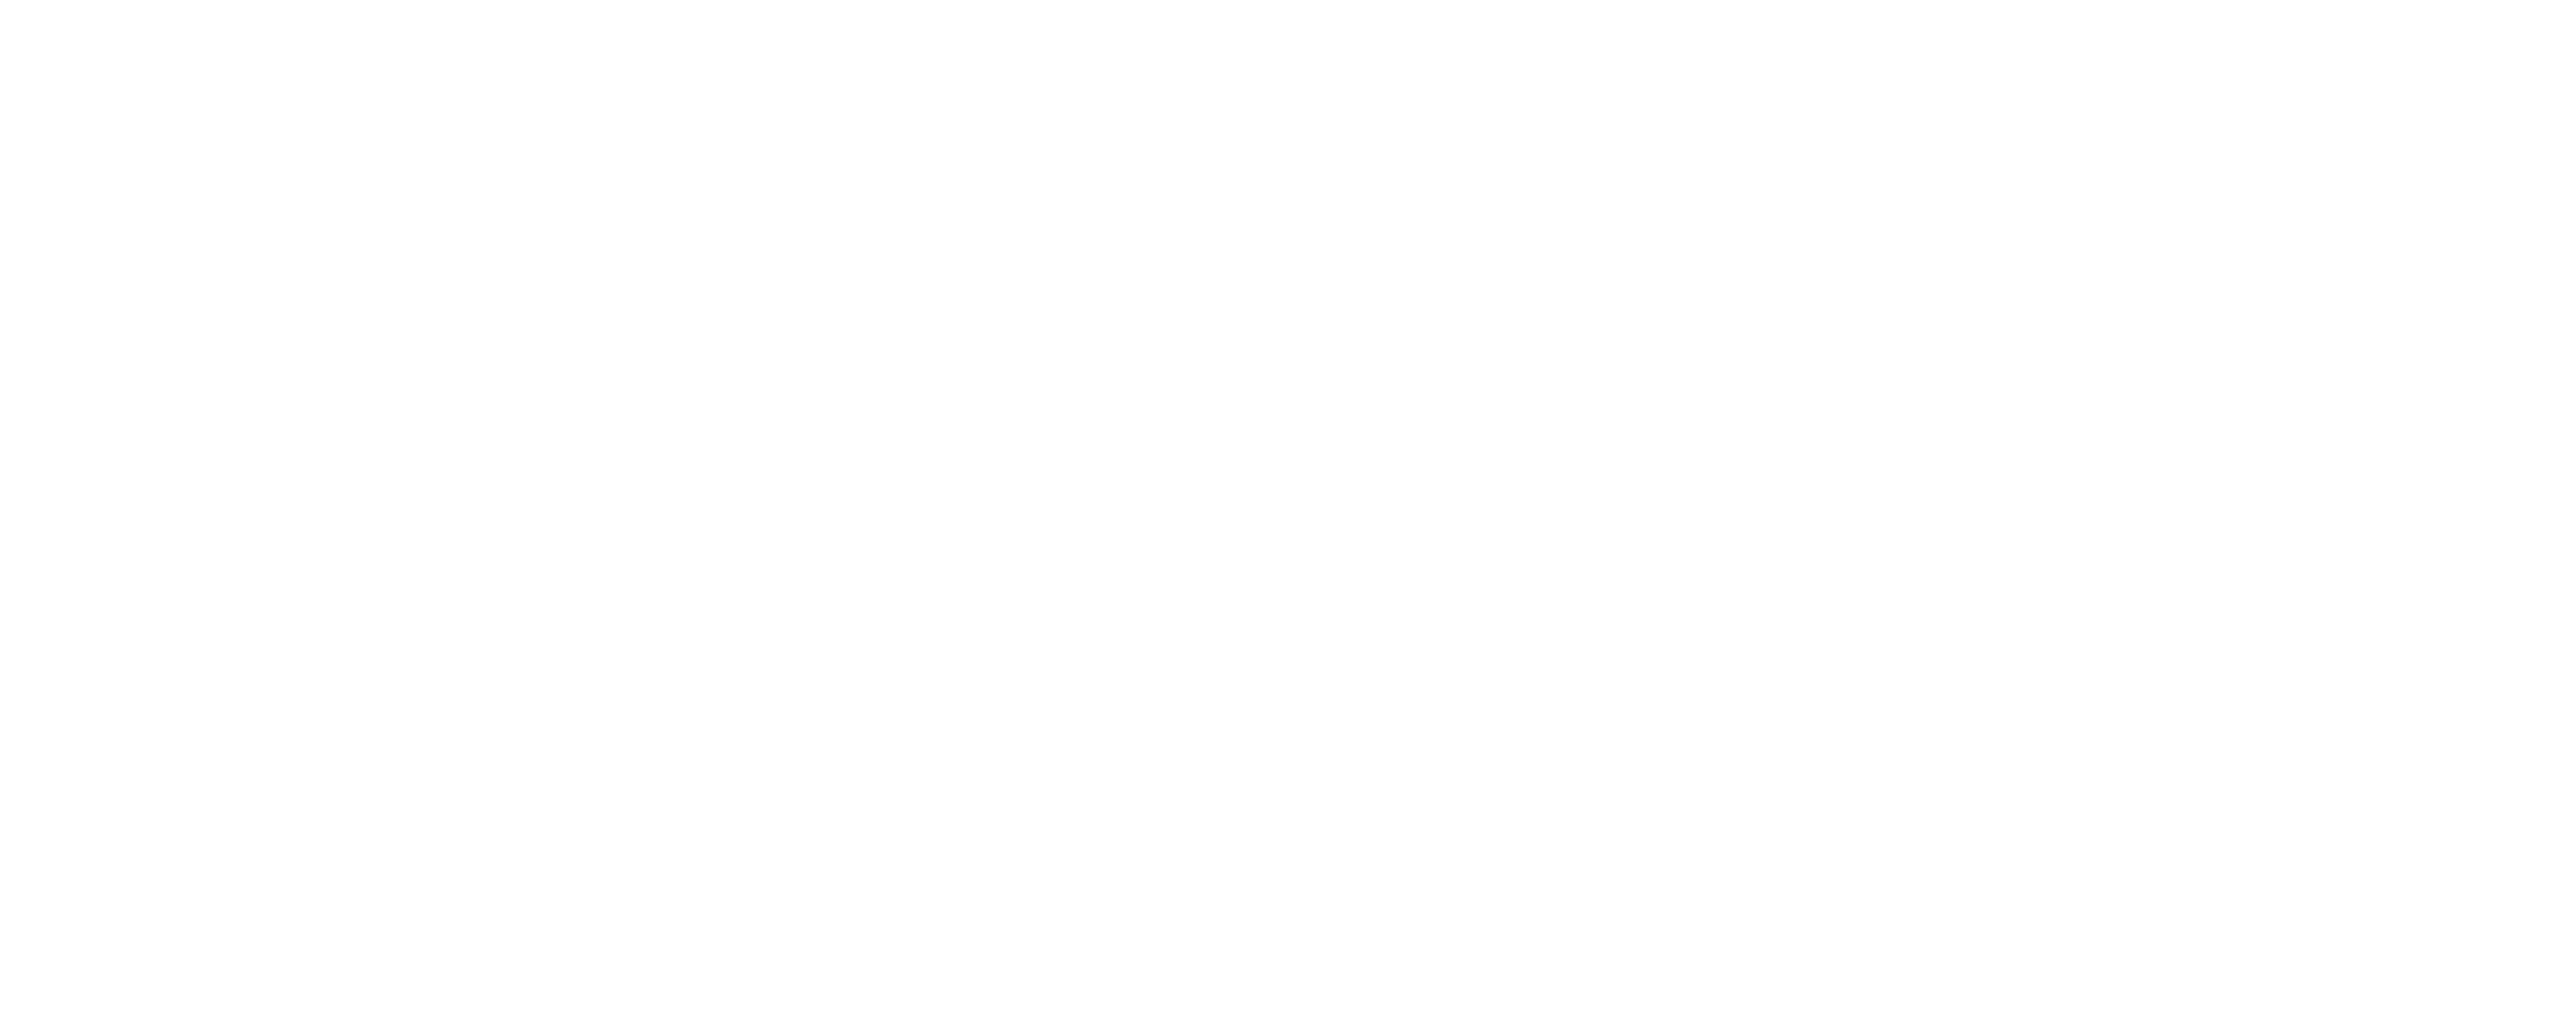 Next Impulse